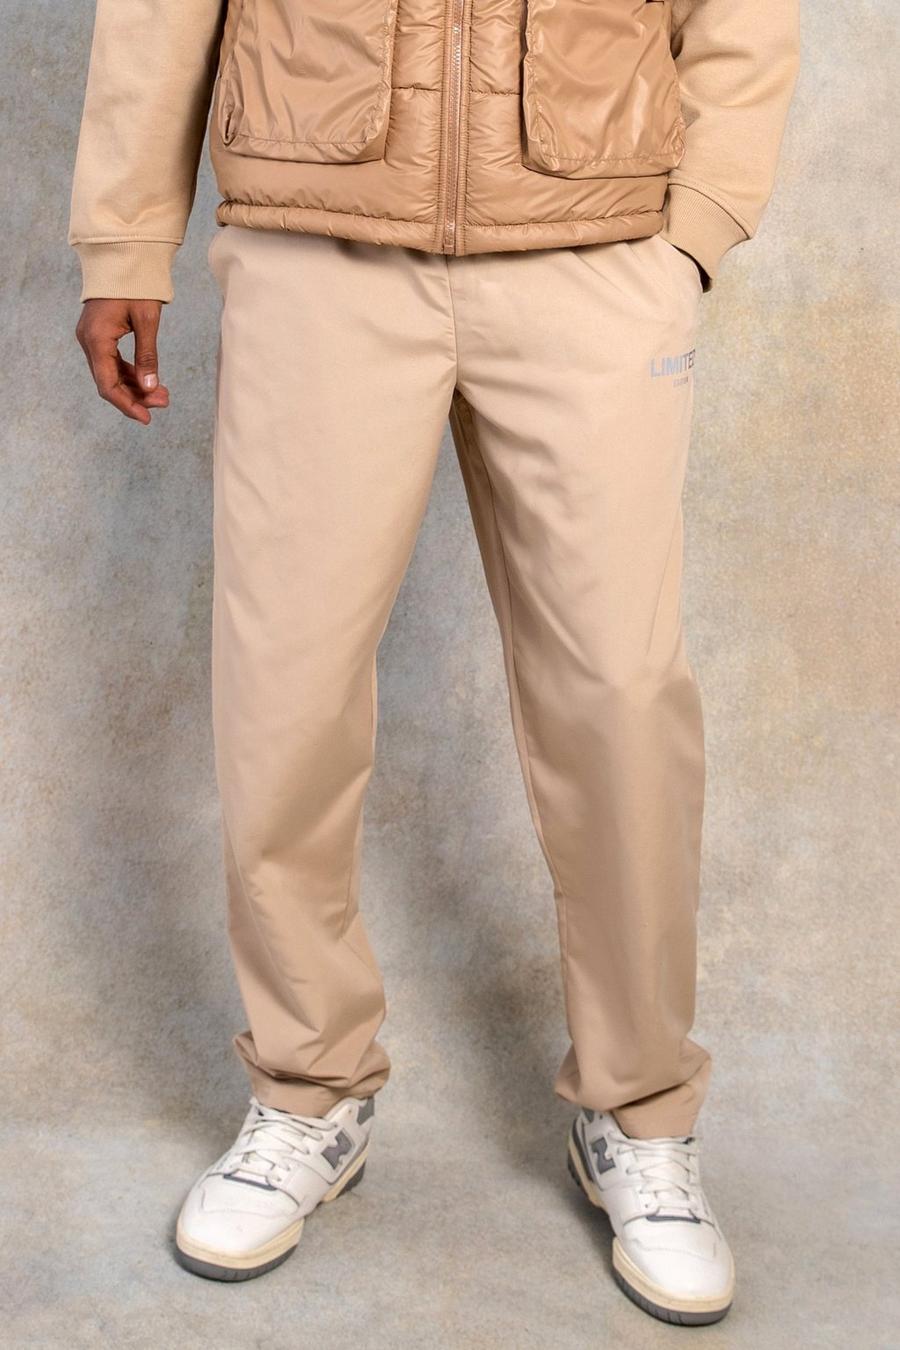 אבן beige מכנסיים בגזרה ישרה מבד עמיד בצבע אפרסק עם כיתוב Limited